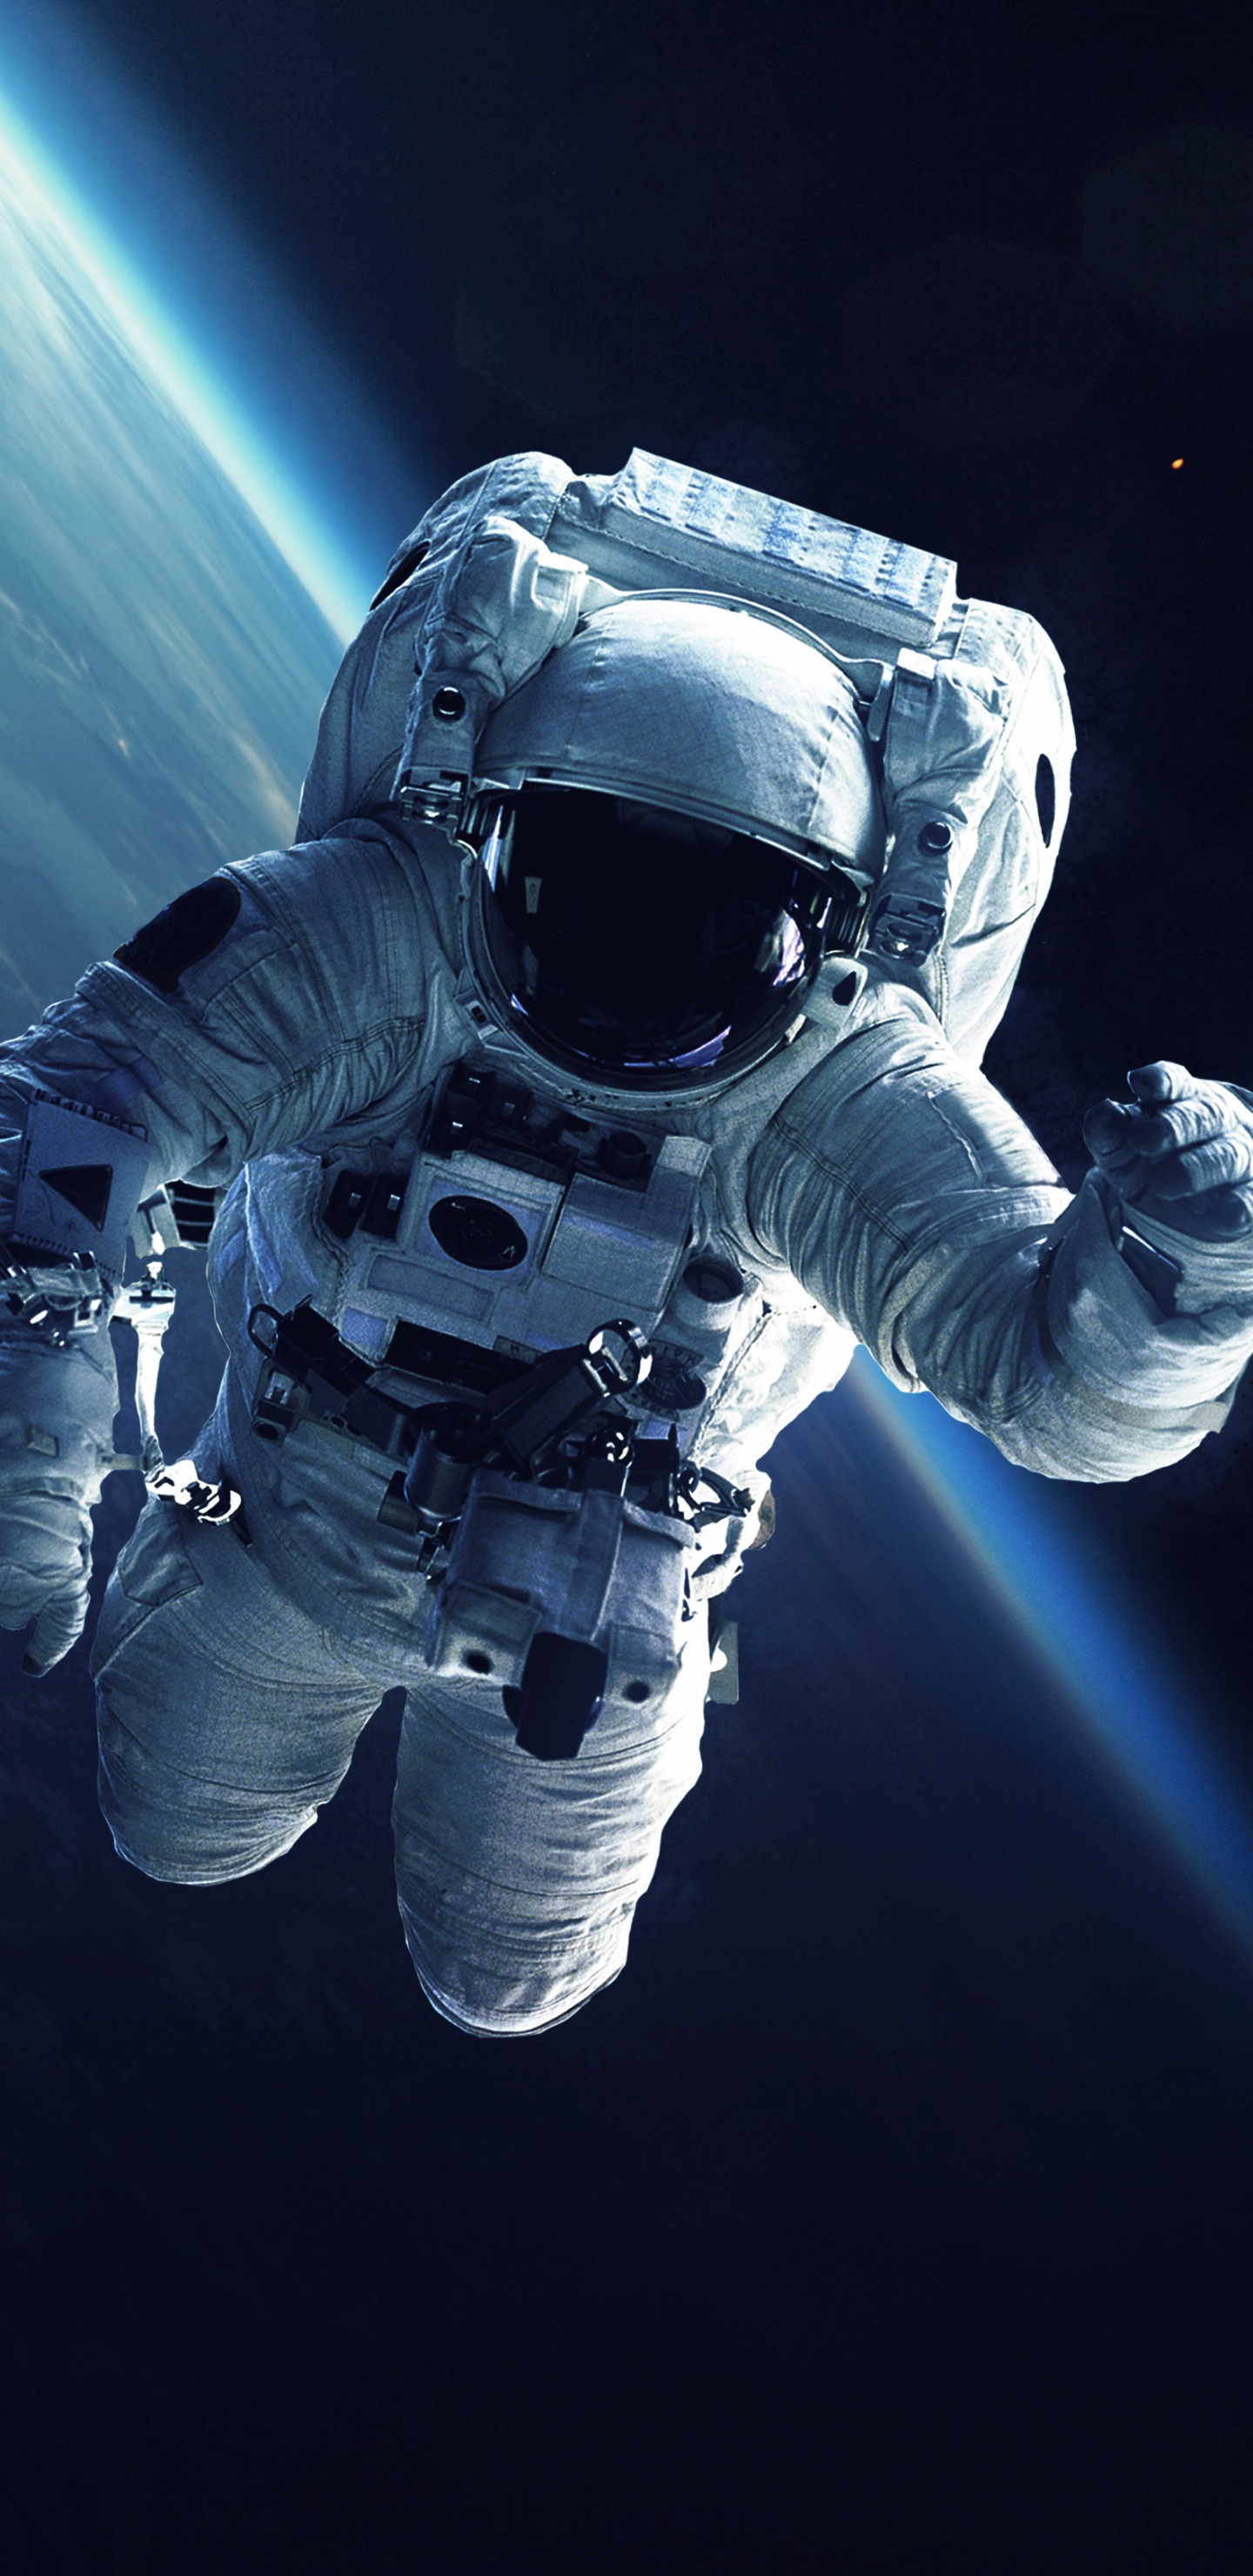 国际空间站, 宇航员, 美国宇航局, 空间探索, 外层空间 壁纸 1440x2960 允许